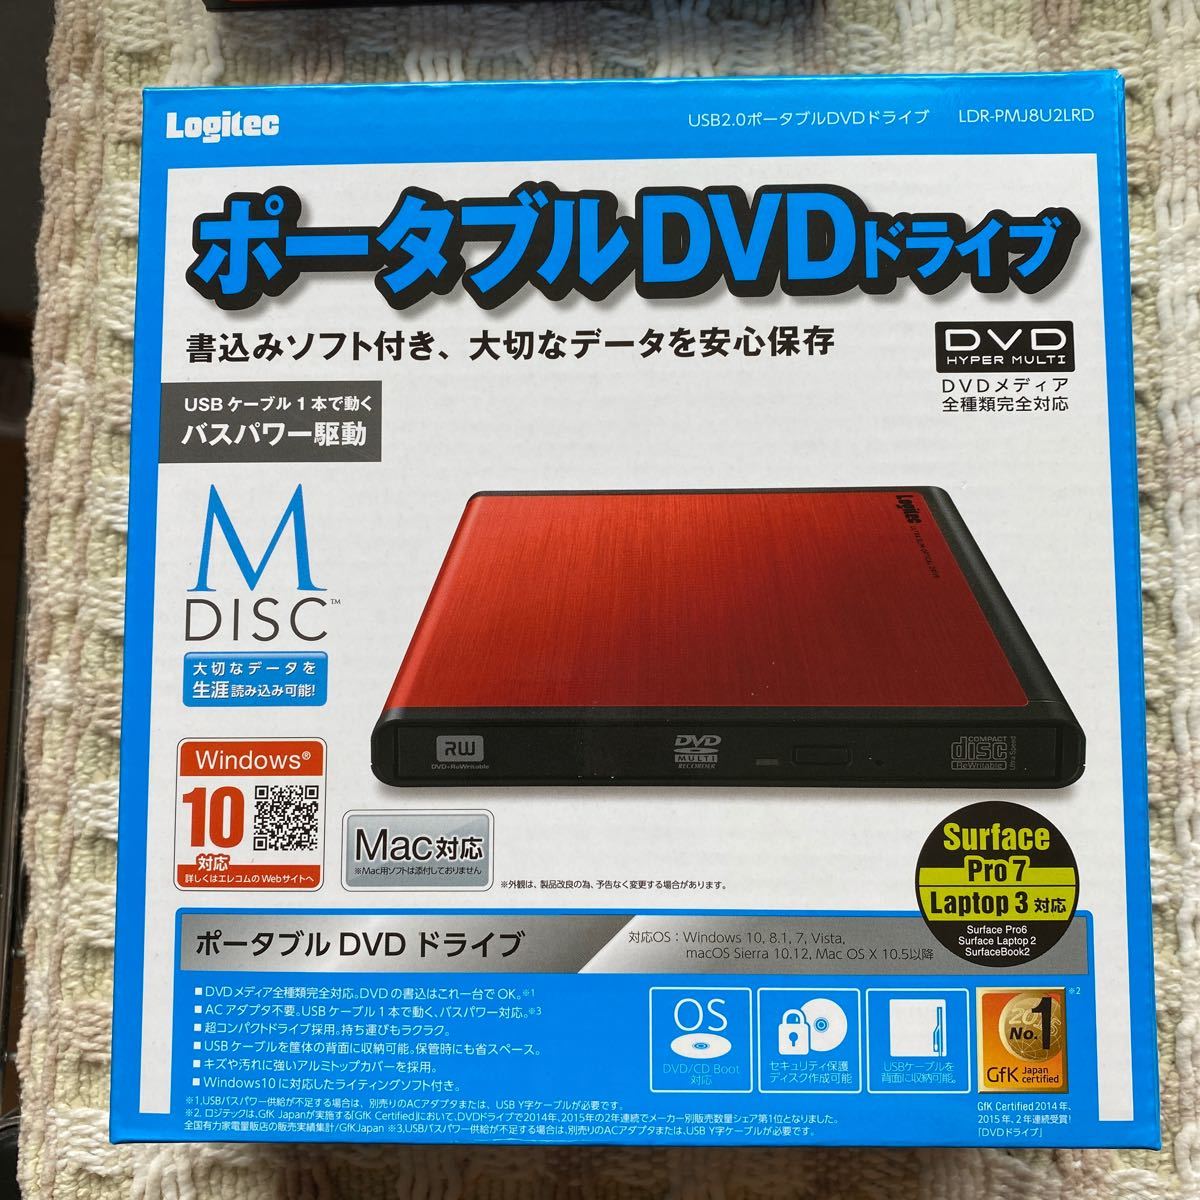 DVDドライブ Windows10対応 USB2.0 ポータブルDVDドライブ 外付け 書込ソフト付属 M-DISC DVD対応